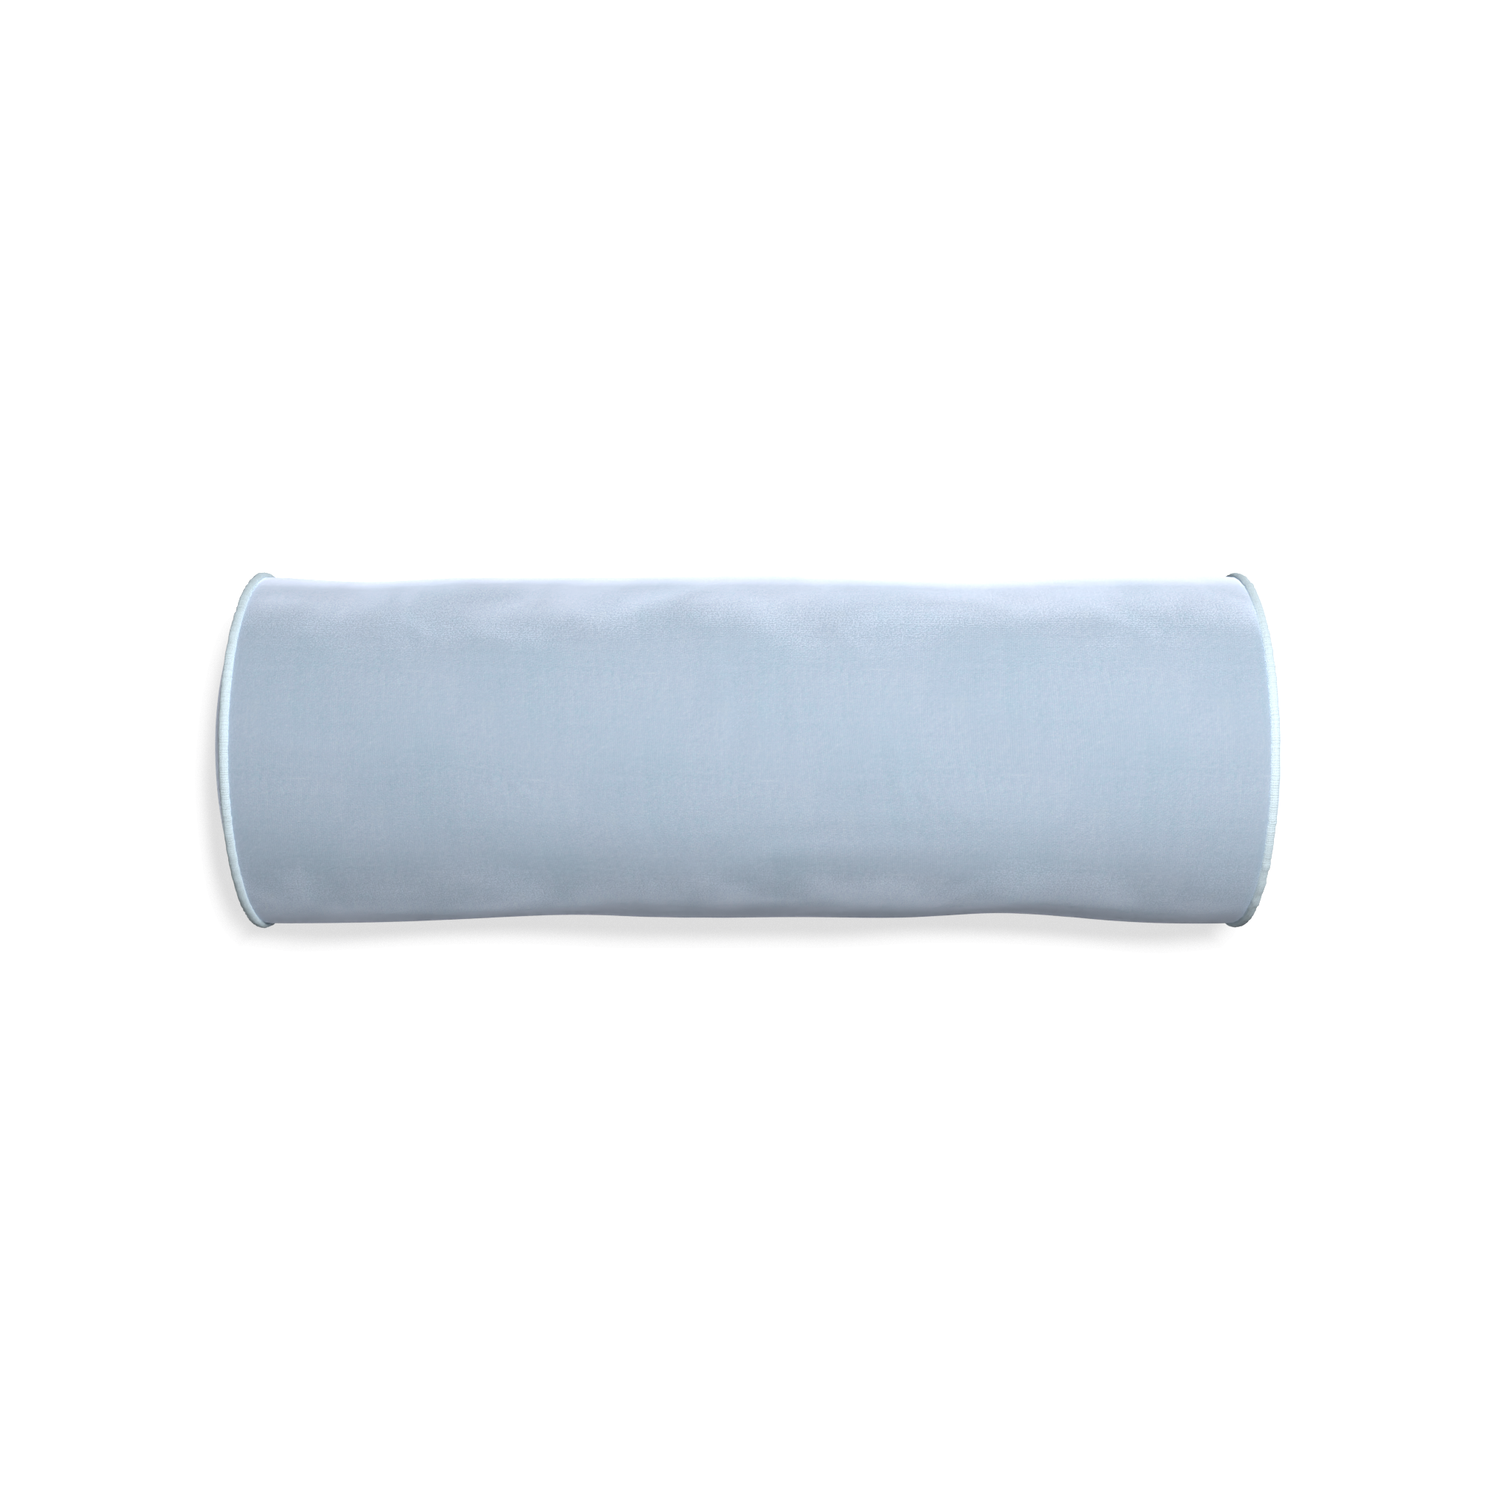 bolster sky blue velvet pillow with light blue piping